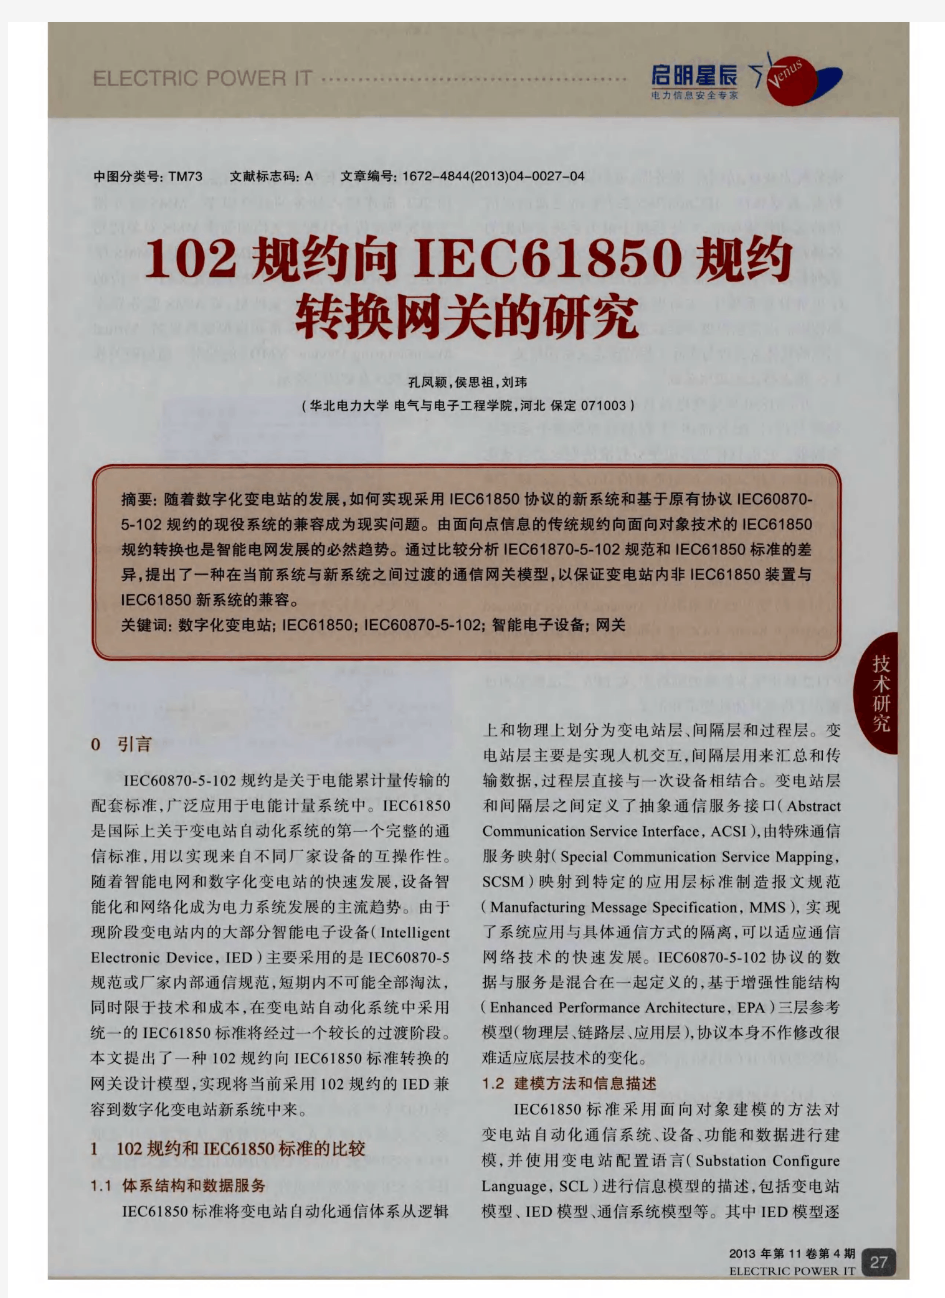 102规约向IEC61850规约转换网关的研究